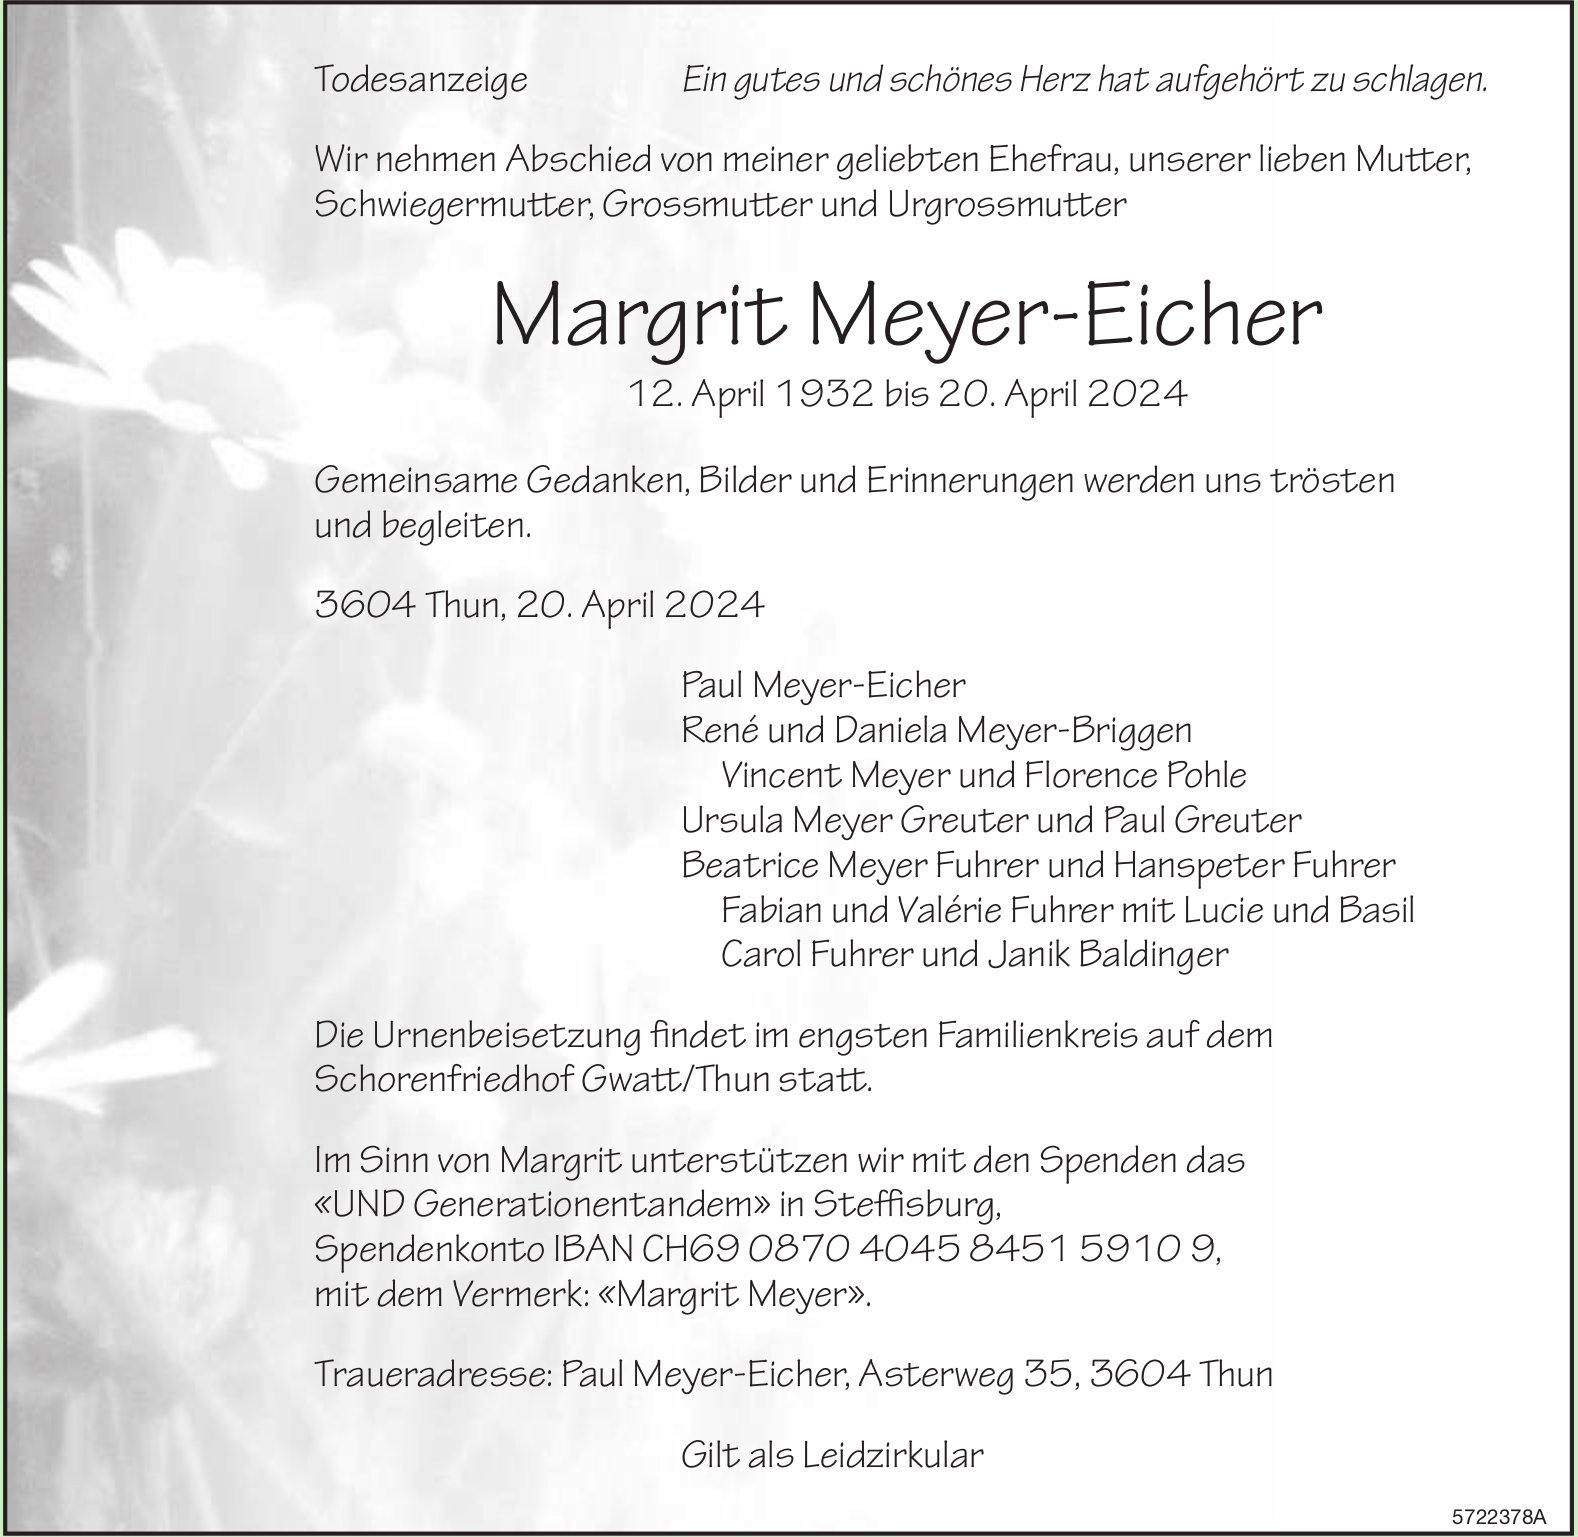 Meyer-Eicher Margrit, April 2024 / TA